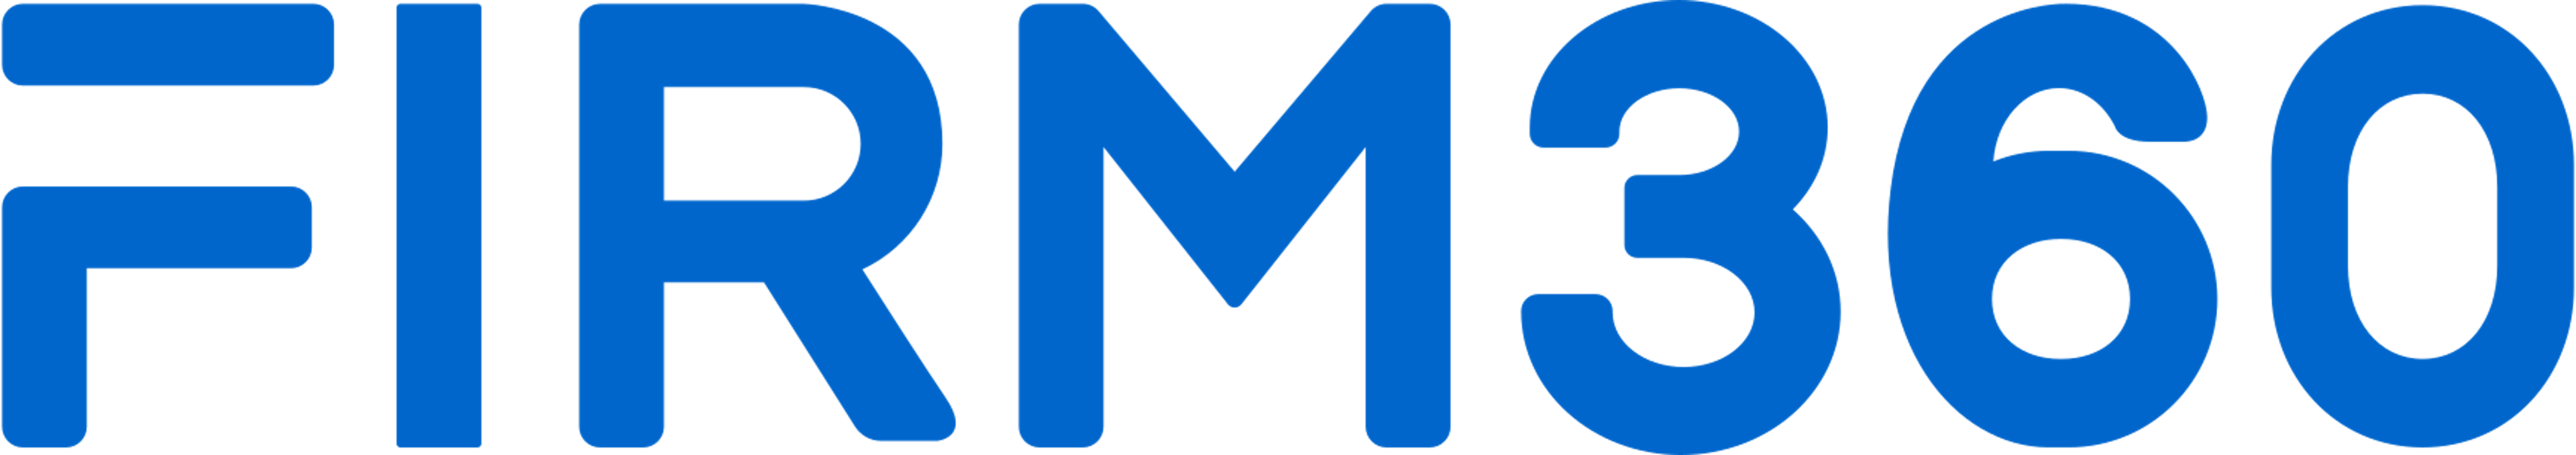 Firm360 Logo